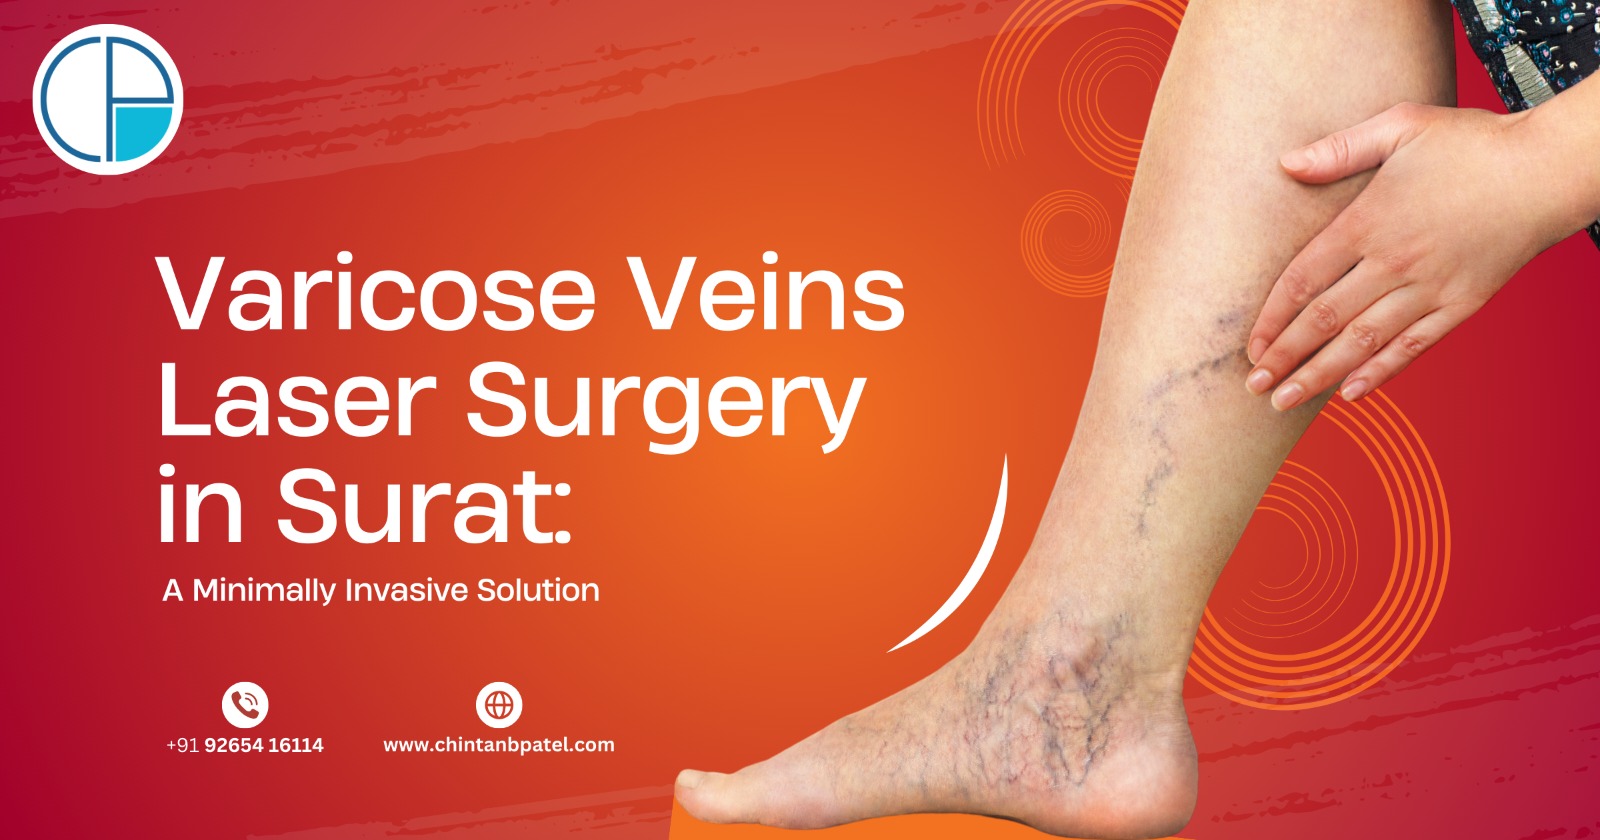 Varicose Veins Laser Surgery in Surat: A Minimally Invasive Solution